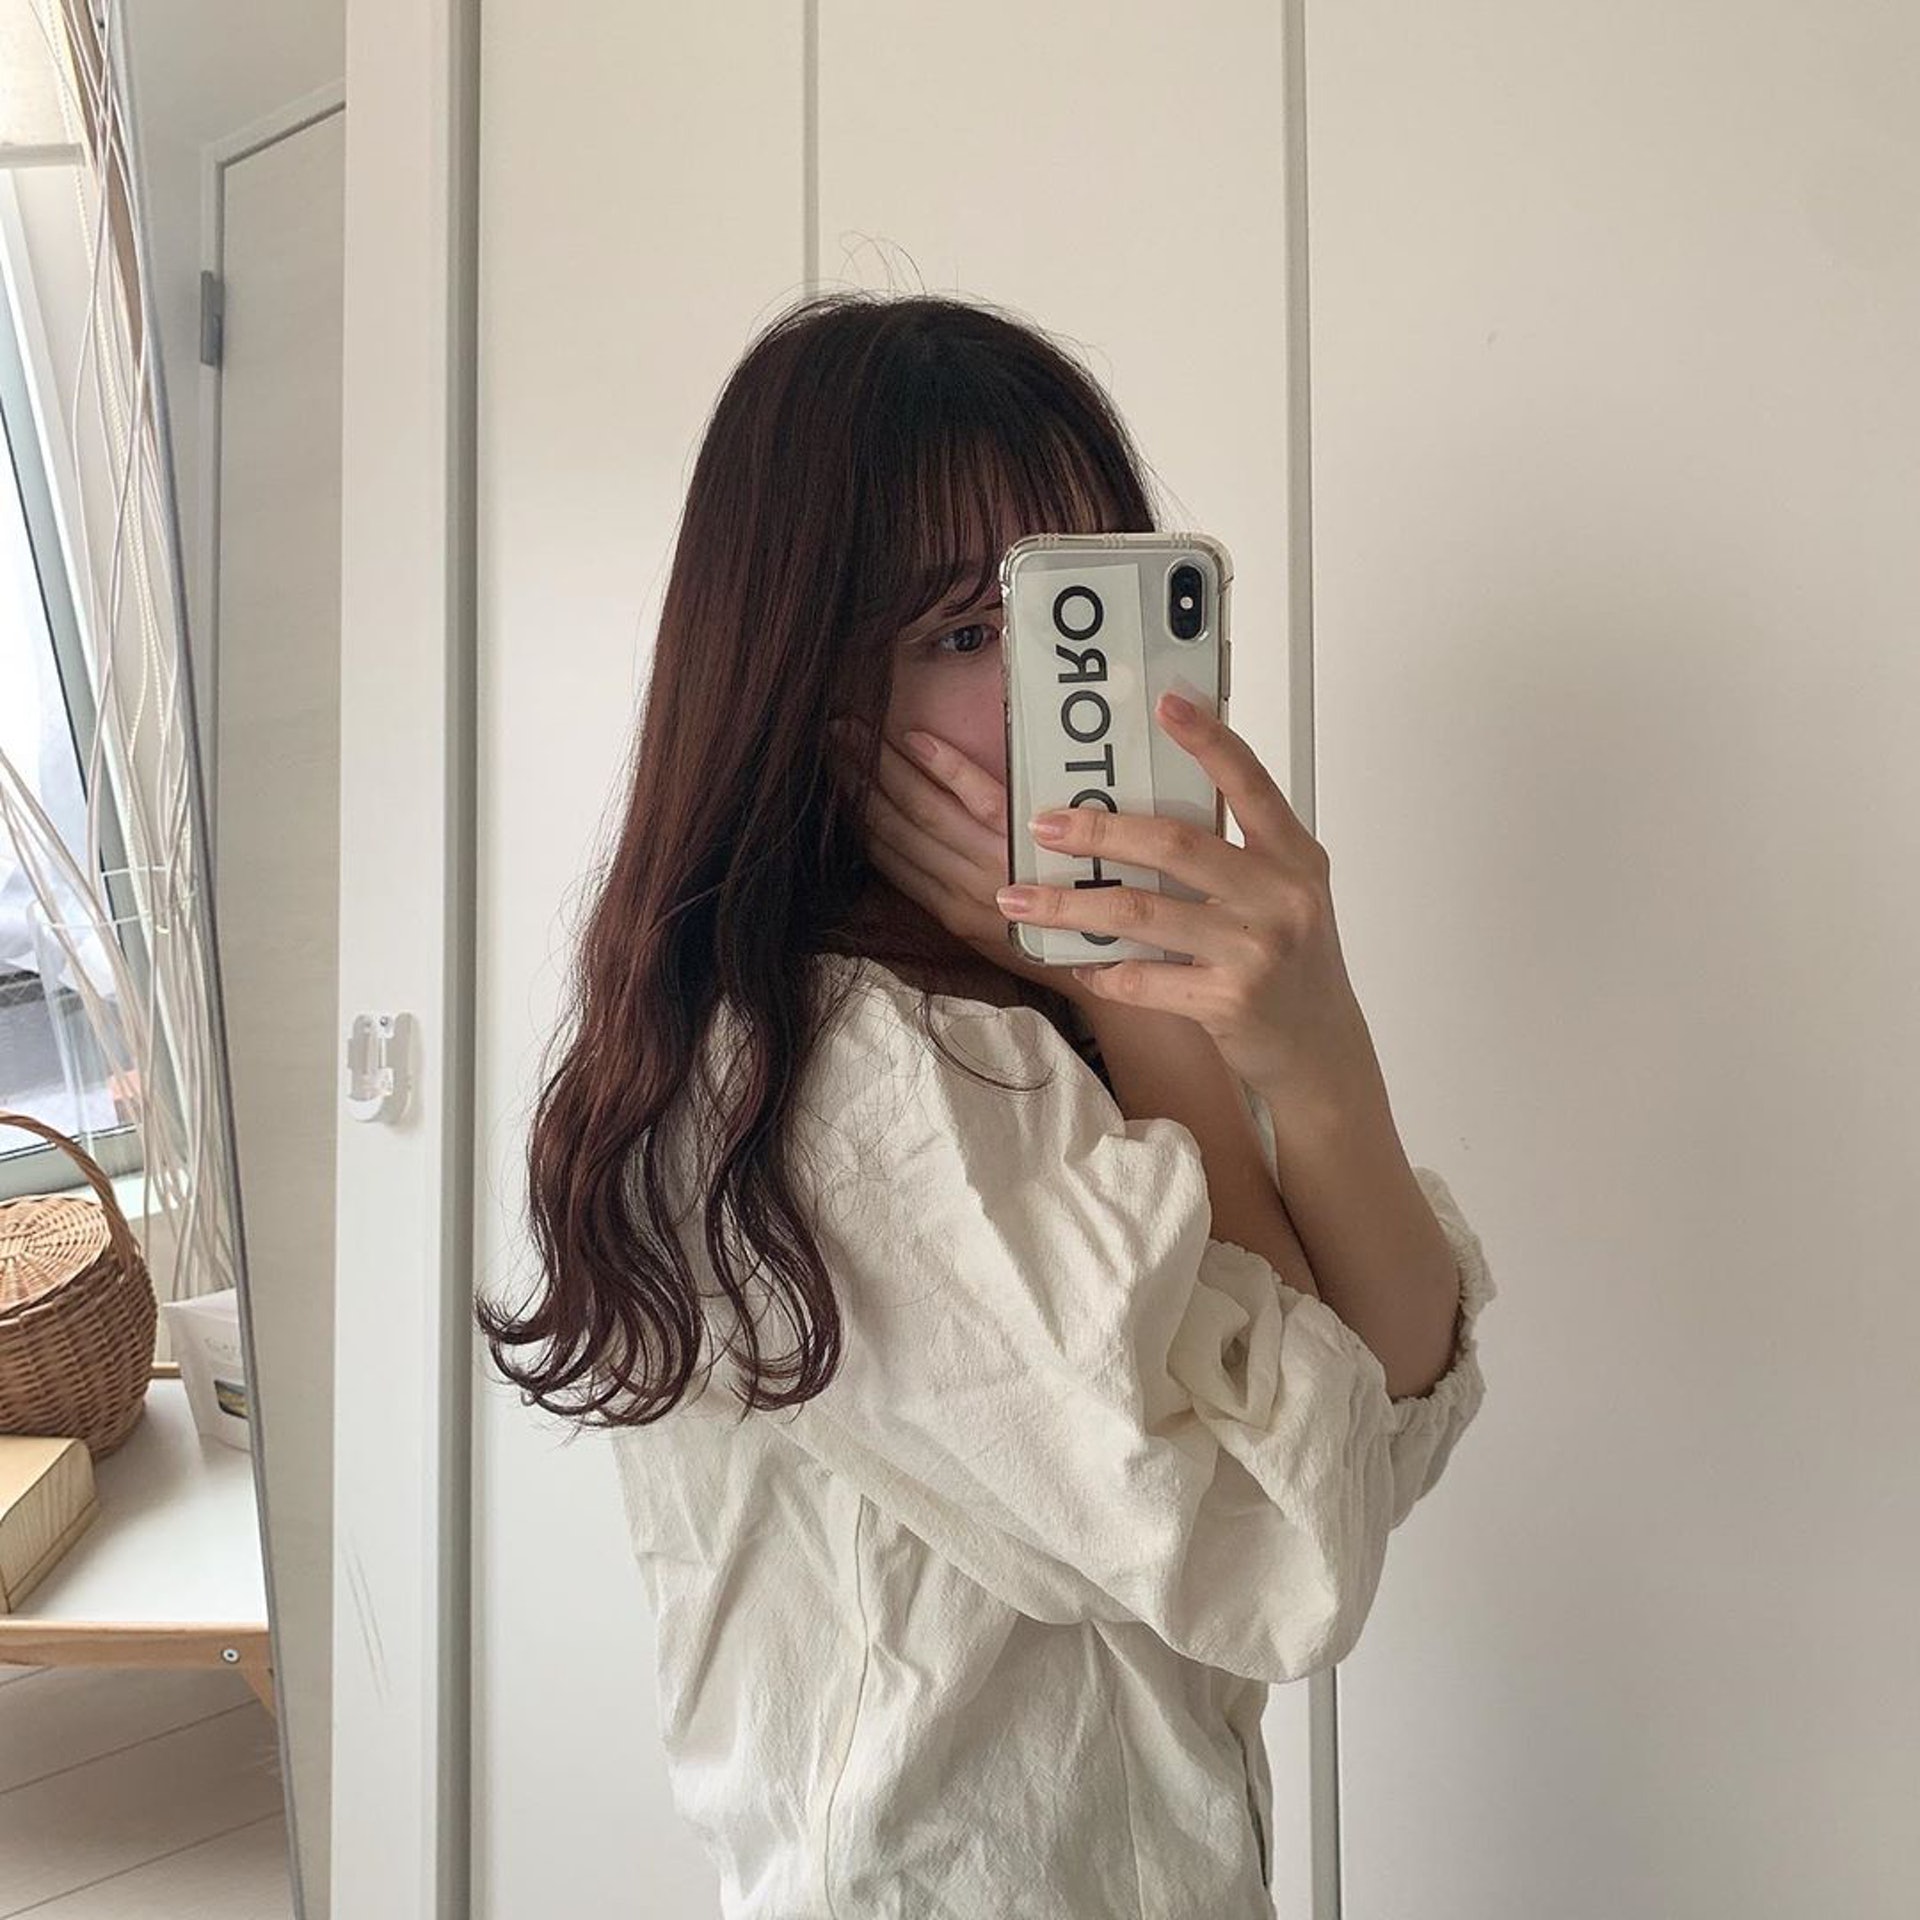 hyororii_69在Instagram擁有3.1萬追蹤者，主要分享無印良品及Ohotoro、Chaakan等日本品牌的穿搭與購入品。(hyororii_69@Instagram)